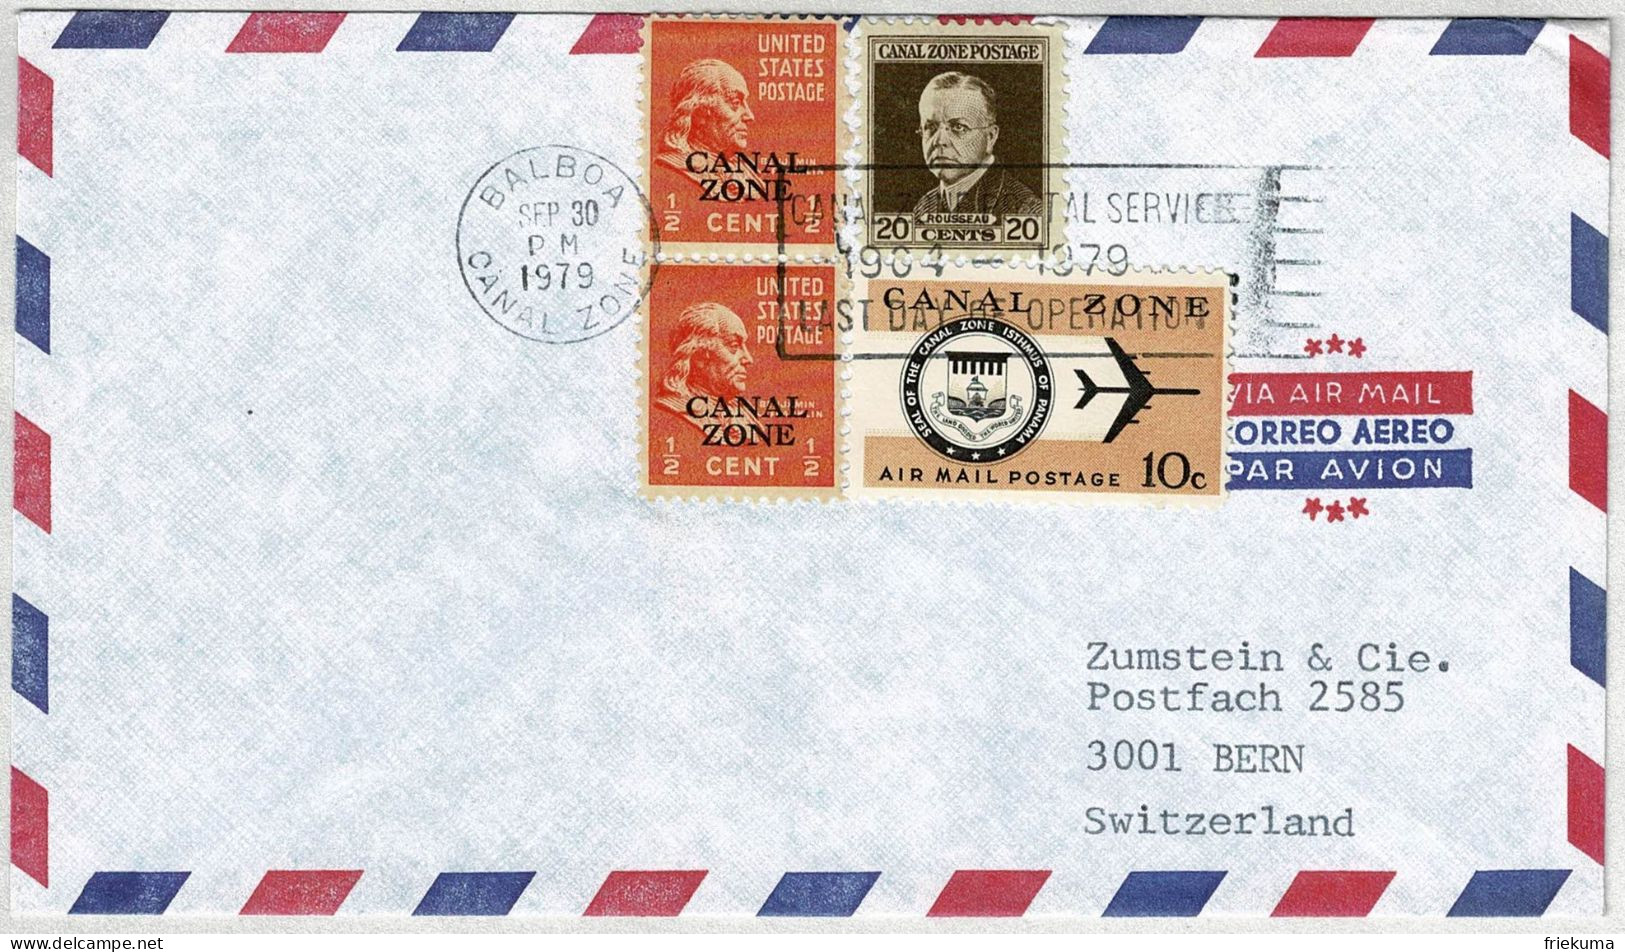 Vereinigte Staaten / USA Canal Zone 1979, Luftpostbrief Balboa  - Bern (Schweiz), Letzttag Posthoheit USA - Kanalzone